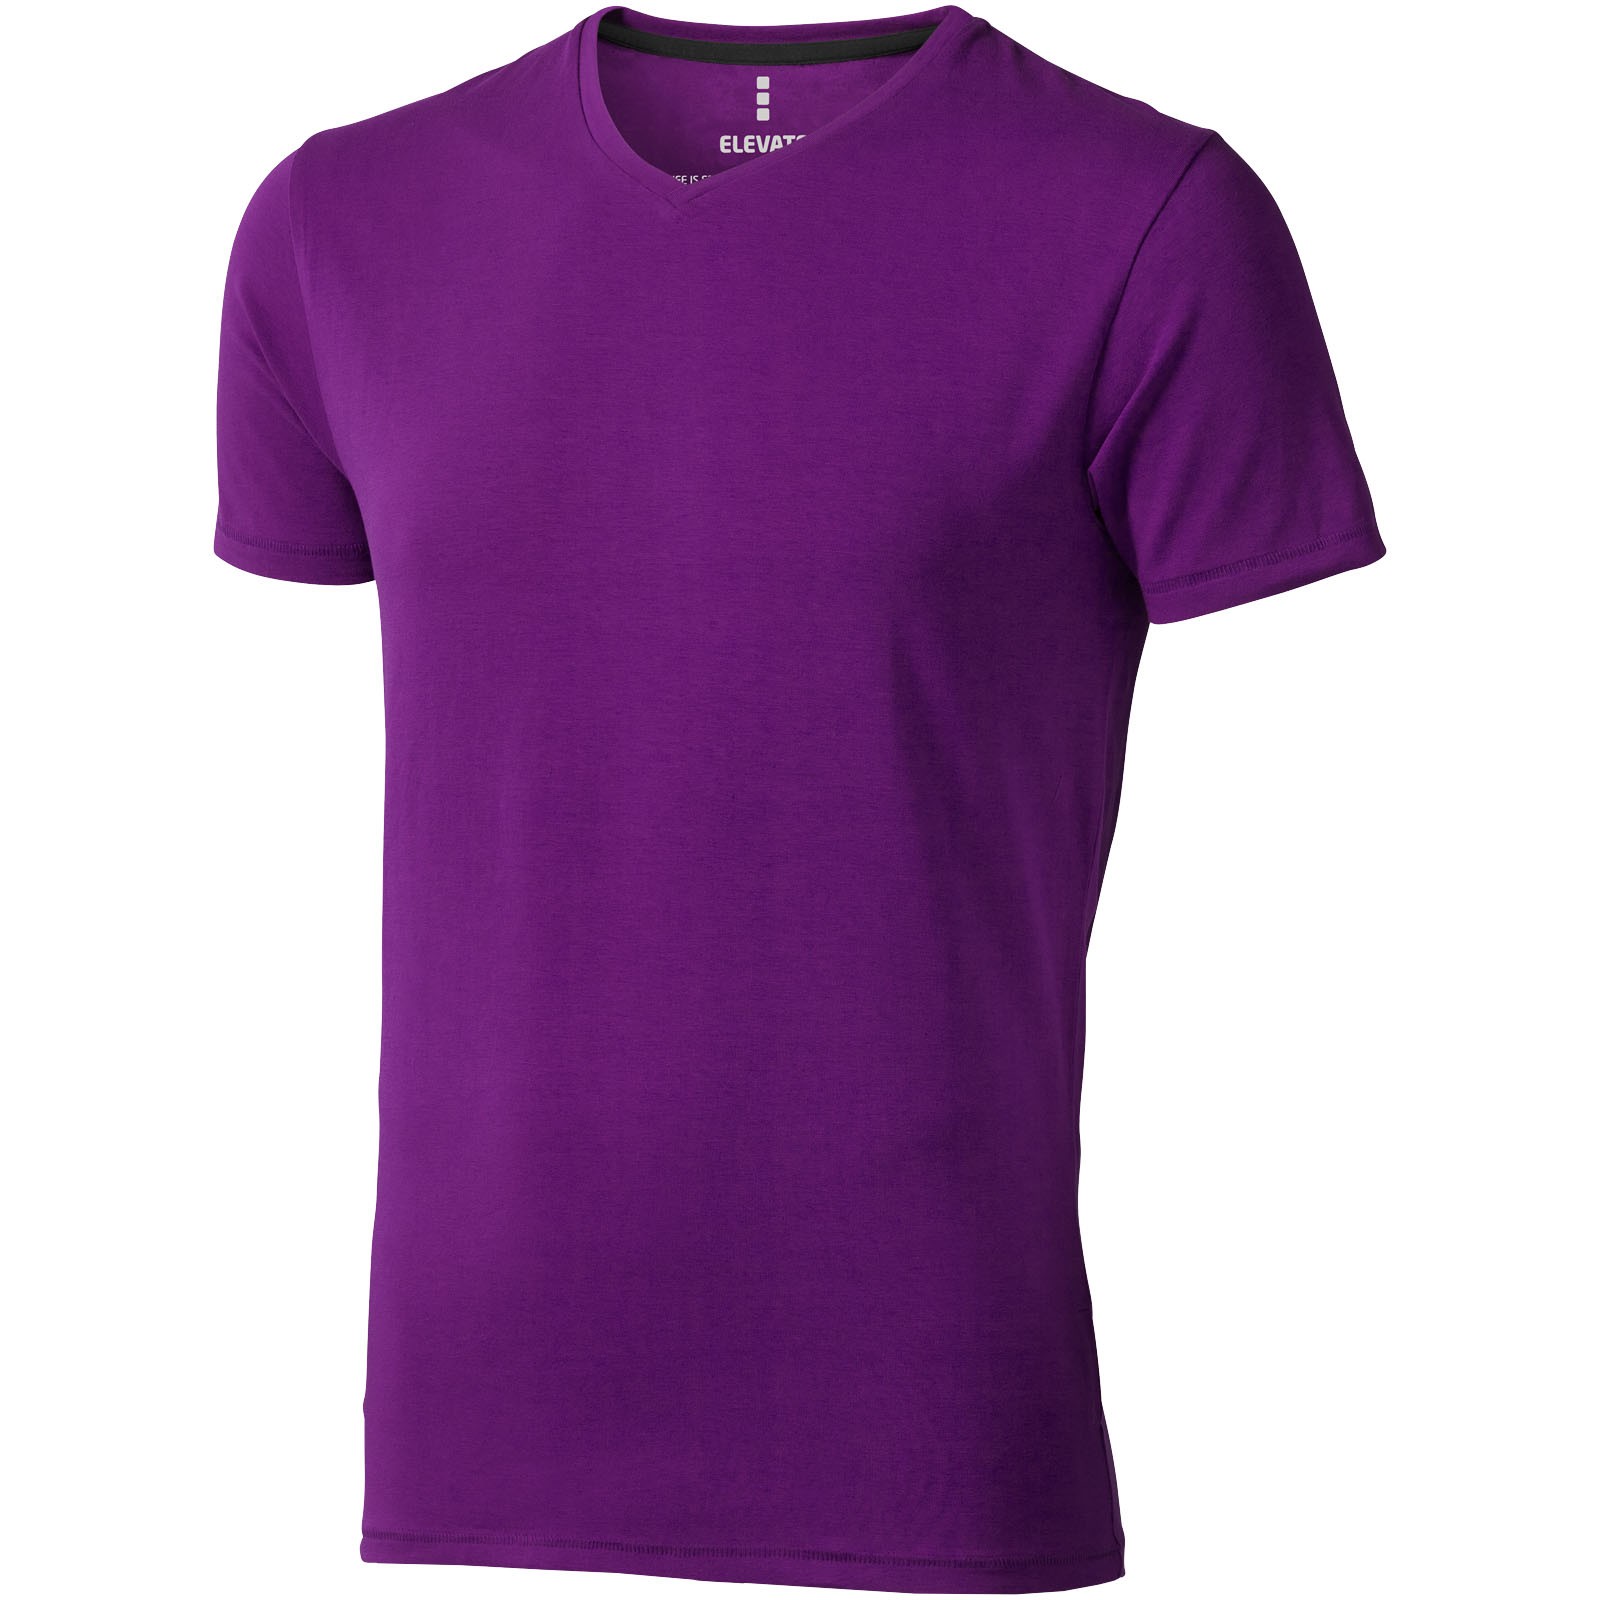 Kawartha short sleeve men's GOTS organic t-shirt - Plum / XXL